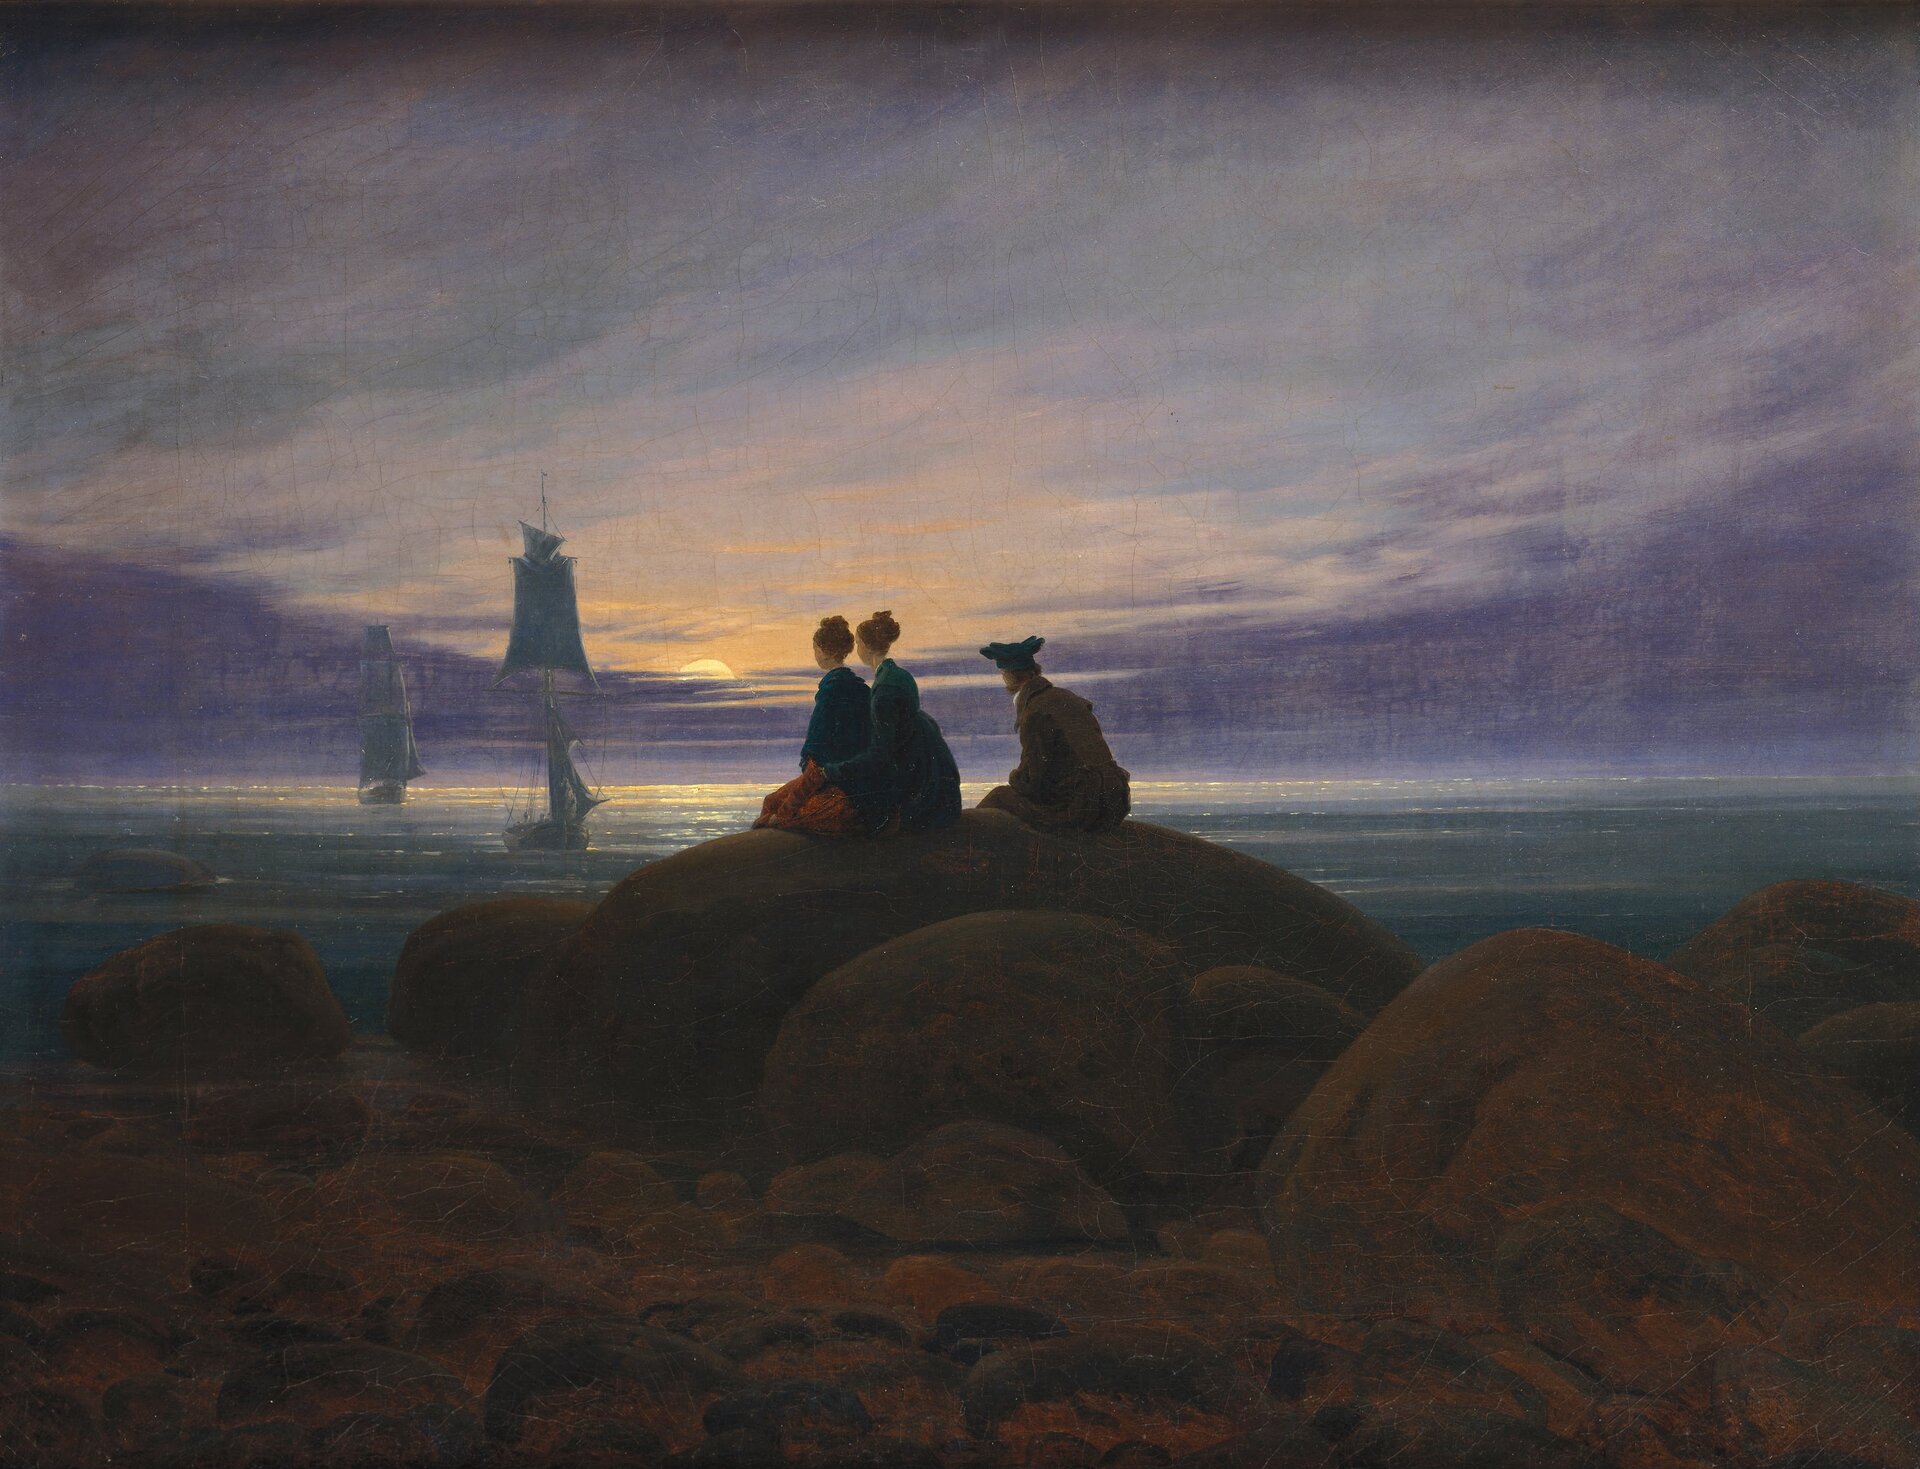 Obraz przedstawia krajobraz nadmorski. Na ogromnych kamieniach spoczywających na piaszczystej plaży siedzą dwie kobiety w długich sukniach i mężczyzna w marynarce, spodniach i kapeluszu. Siedzący obserwują morze, po którym płyną spokojnie dwa żaglowce. Zachodzi słońce.